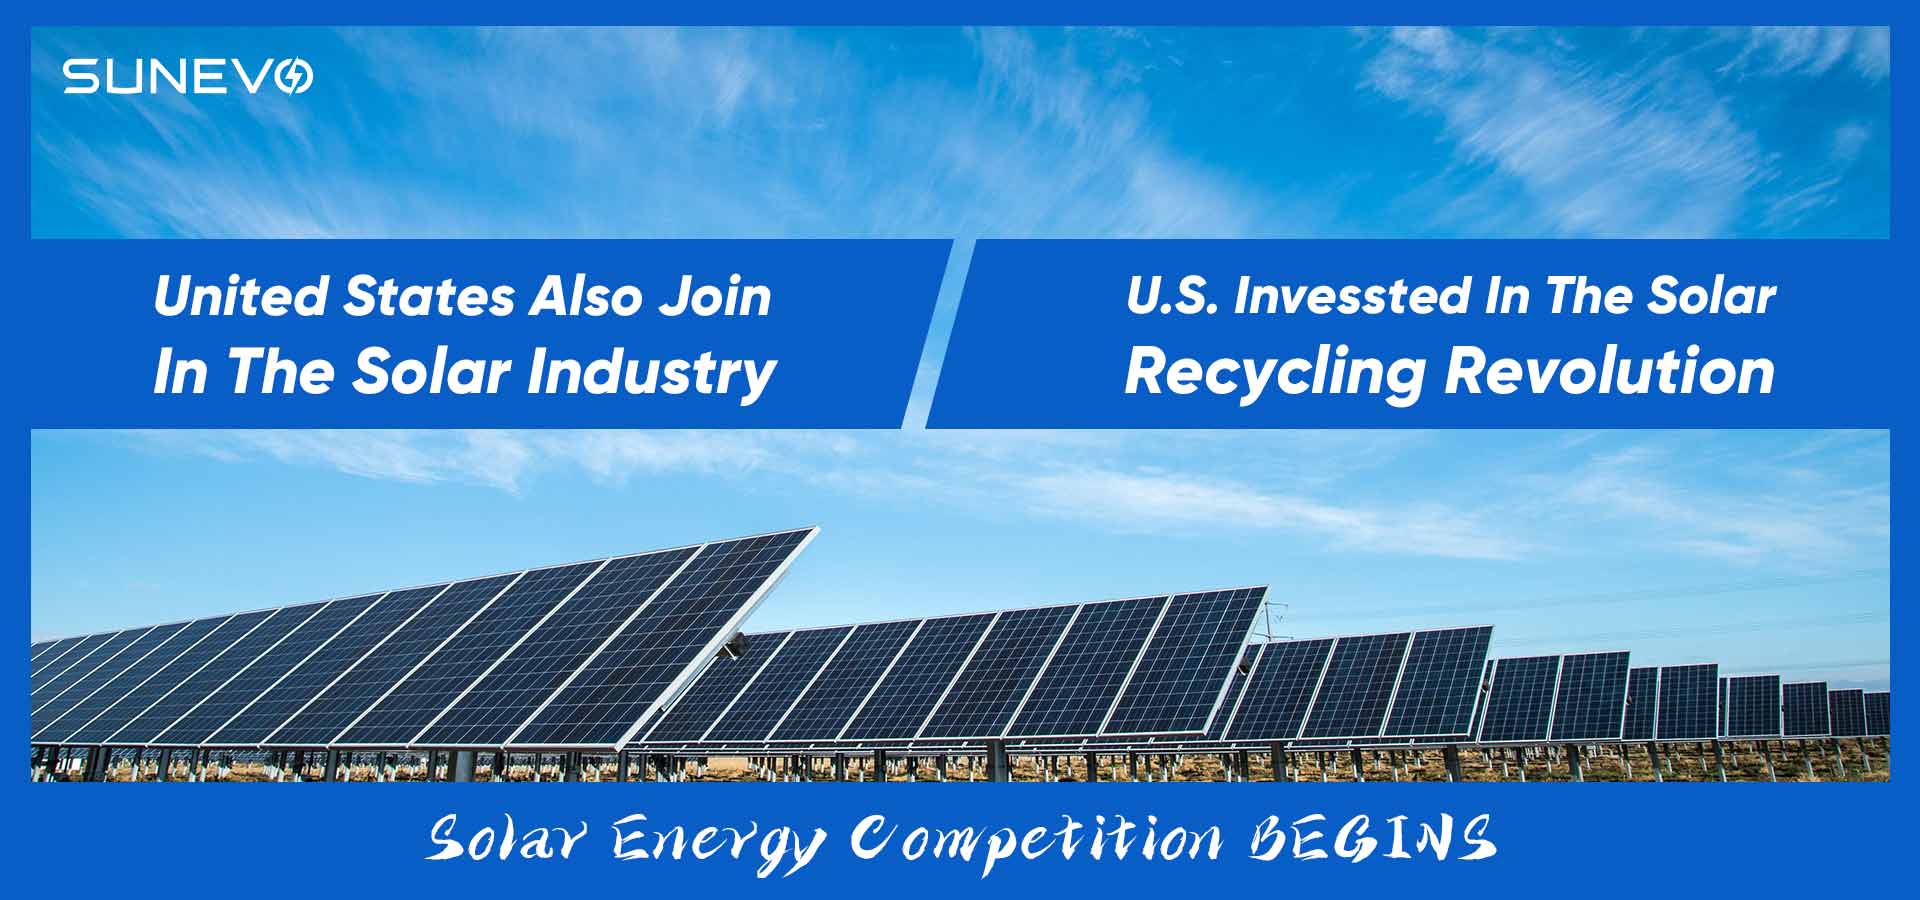 Investimento dos EUA na revolução da reciclagem solar